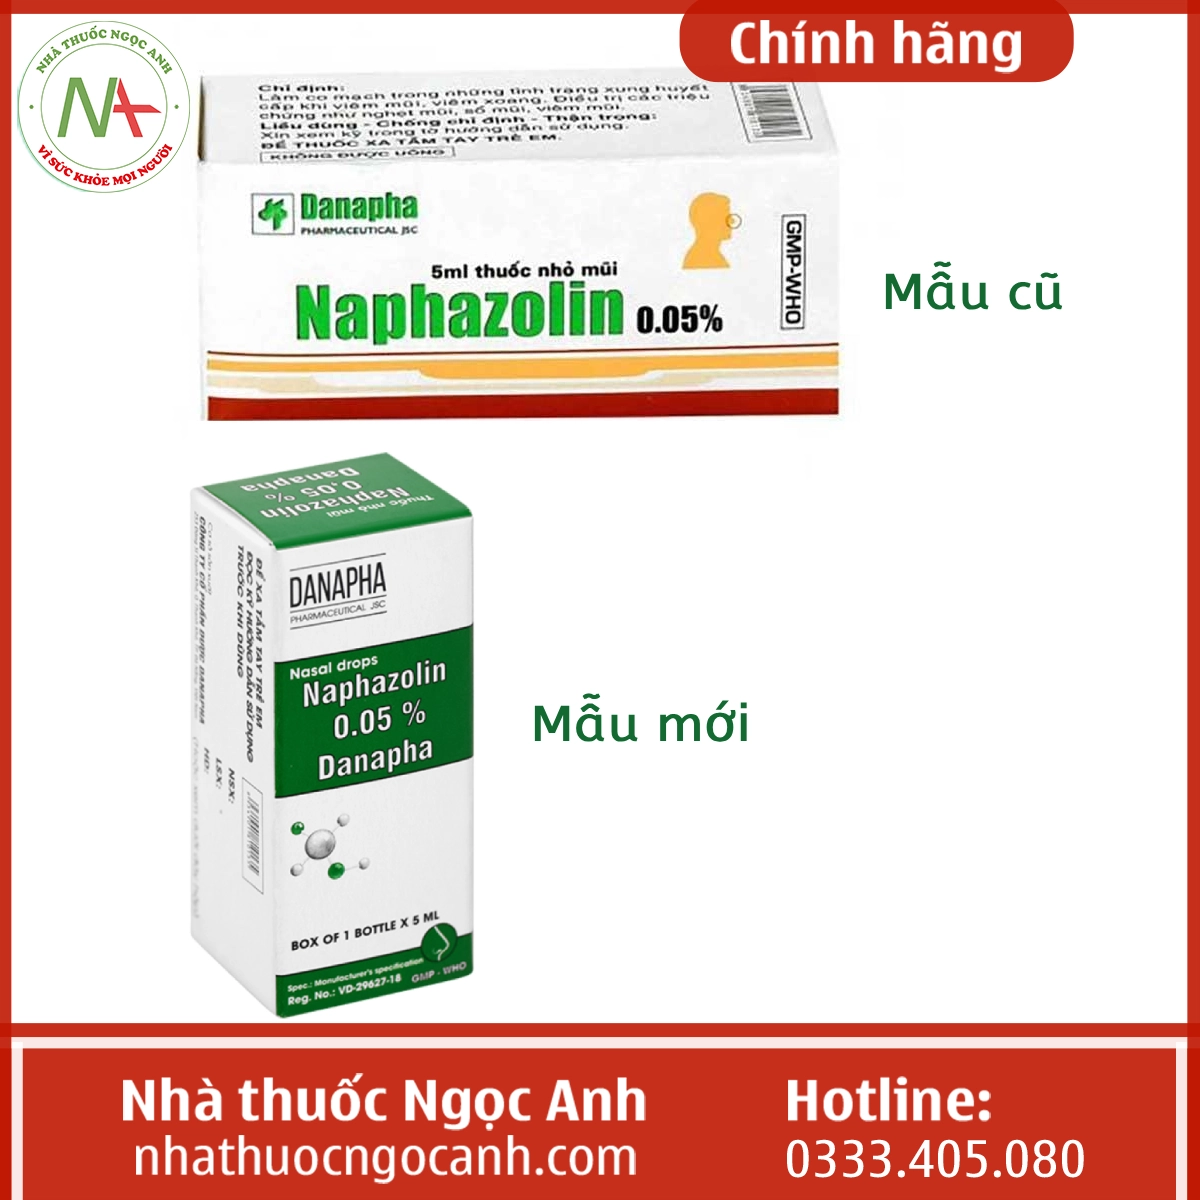 Thuốc Naphazolin 0,05% Danapha 5ml mẫu cũ và mẫu mới